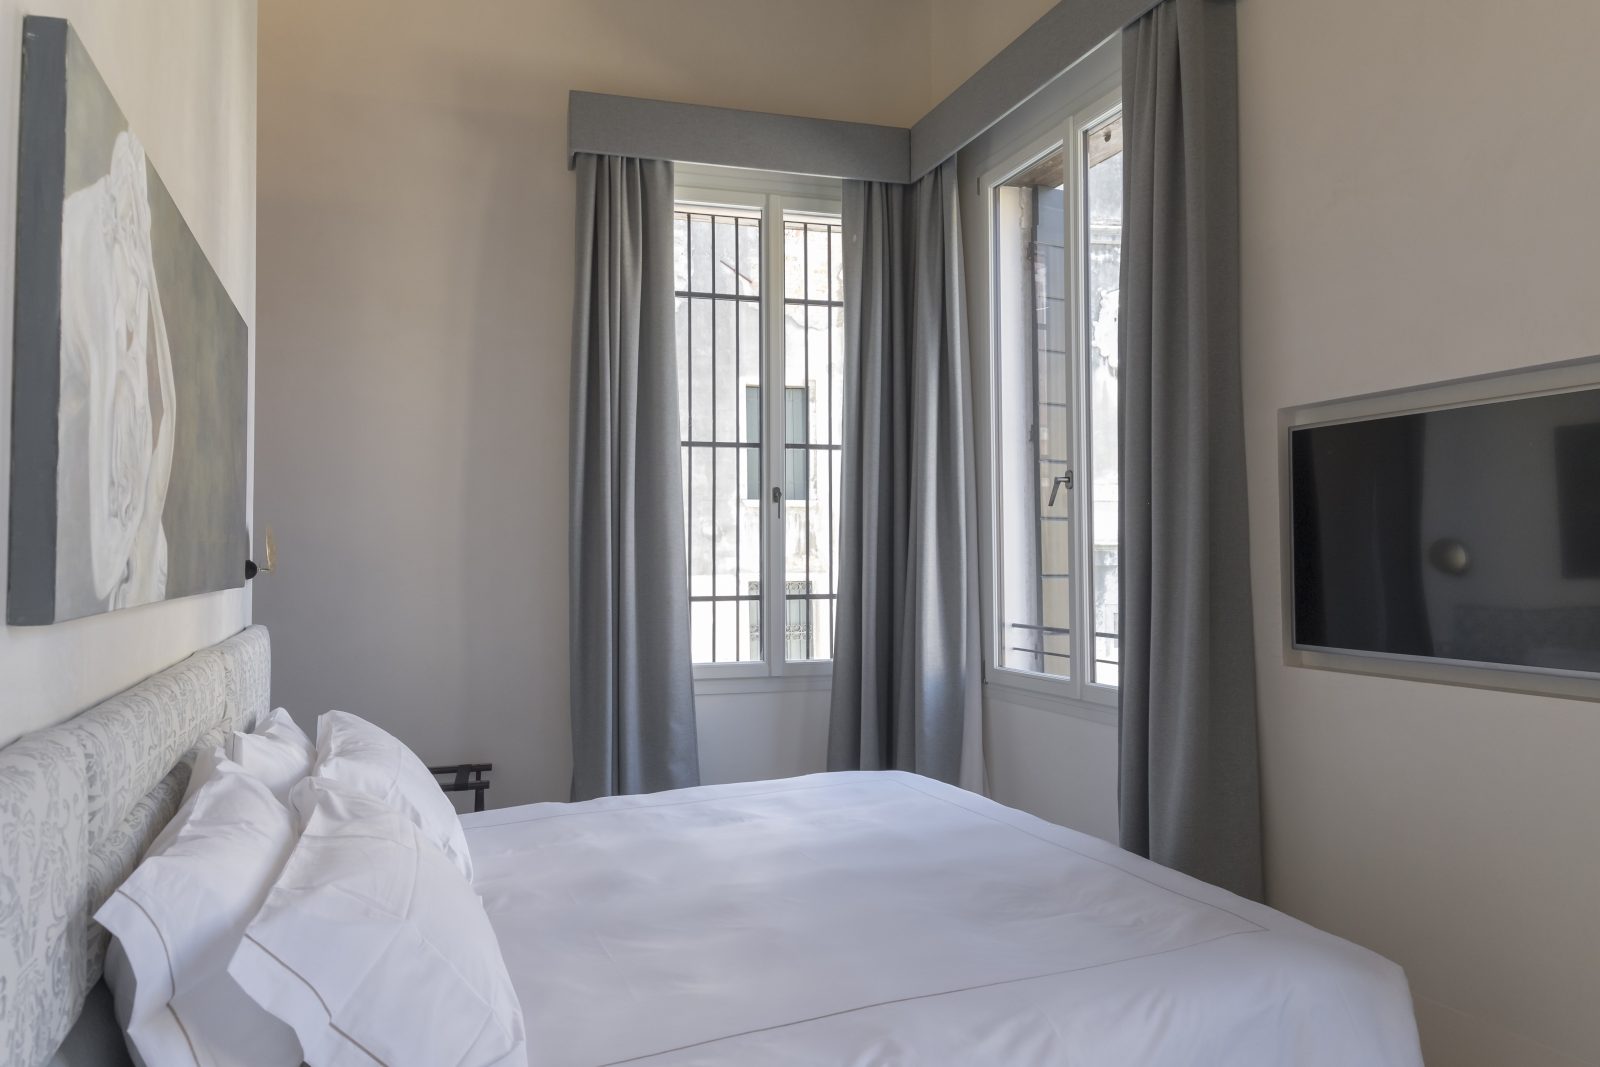 camera-letto-quadro-appartamento-coriandolo-grigio-bianco-finestre-tv-schermo-venezia-palazzo-morosini